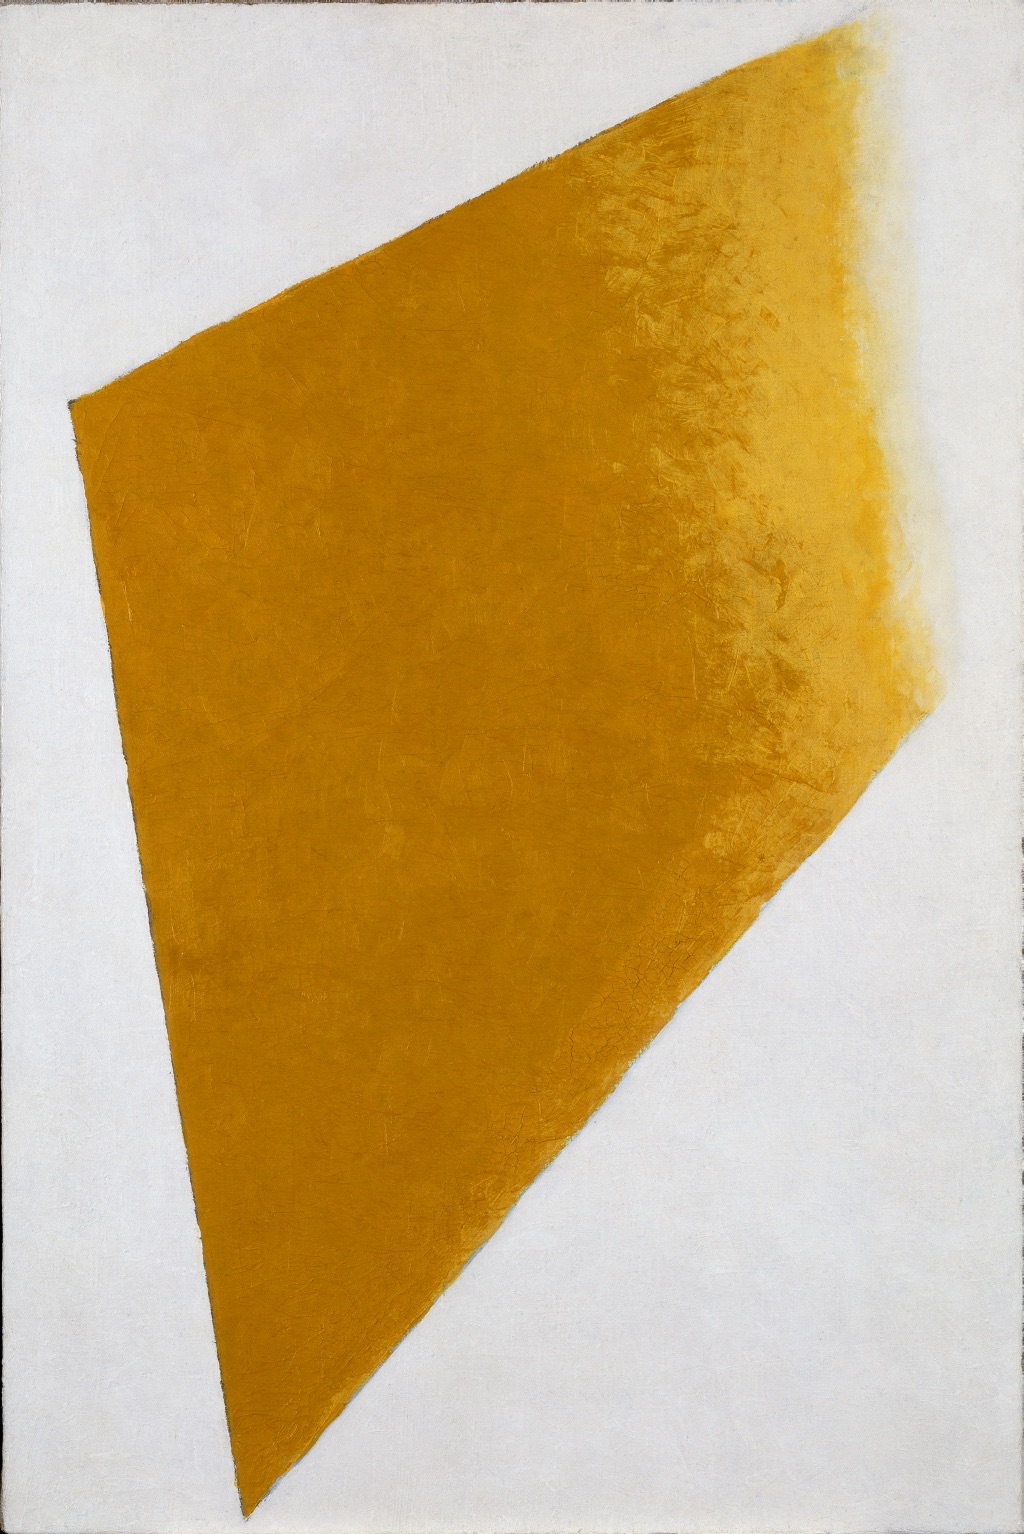 溶解的黃色平面 by Kazimir Malevich - 1917-1918年 - 109 x 73.5 x 4.5 cm 